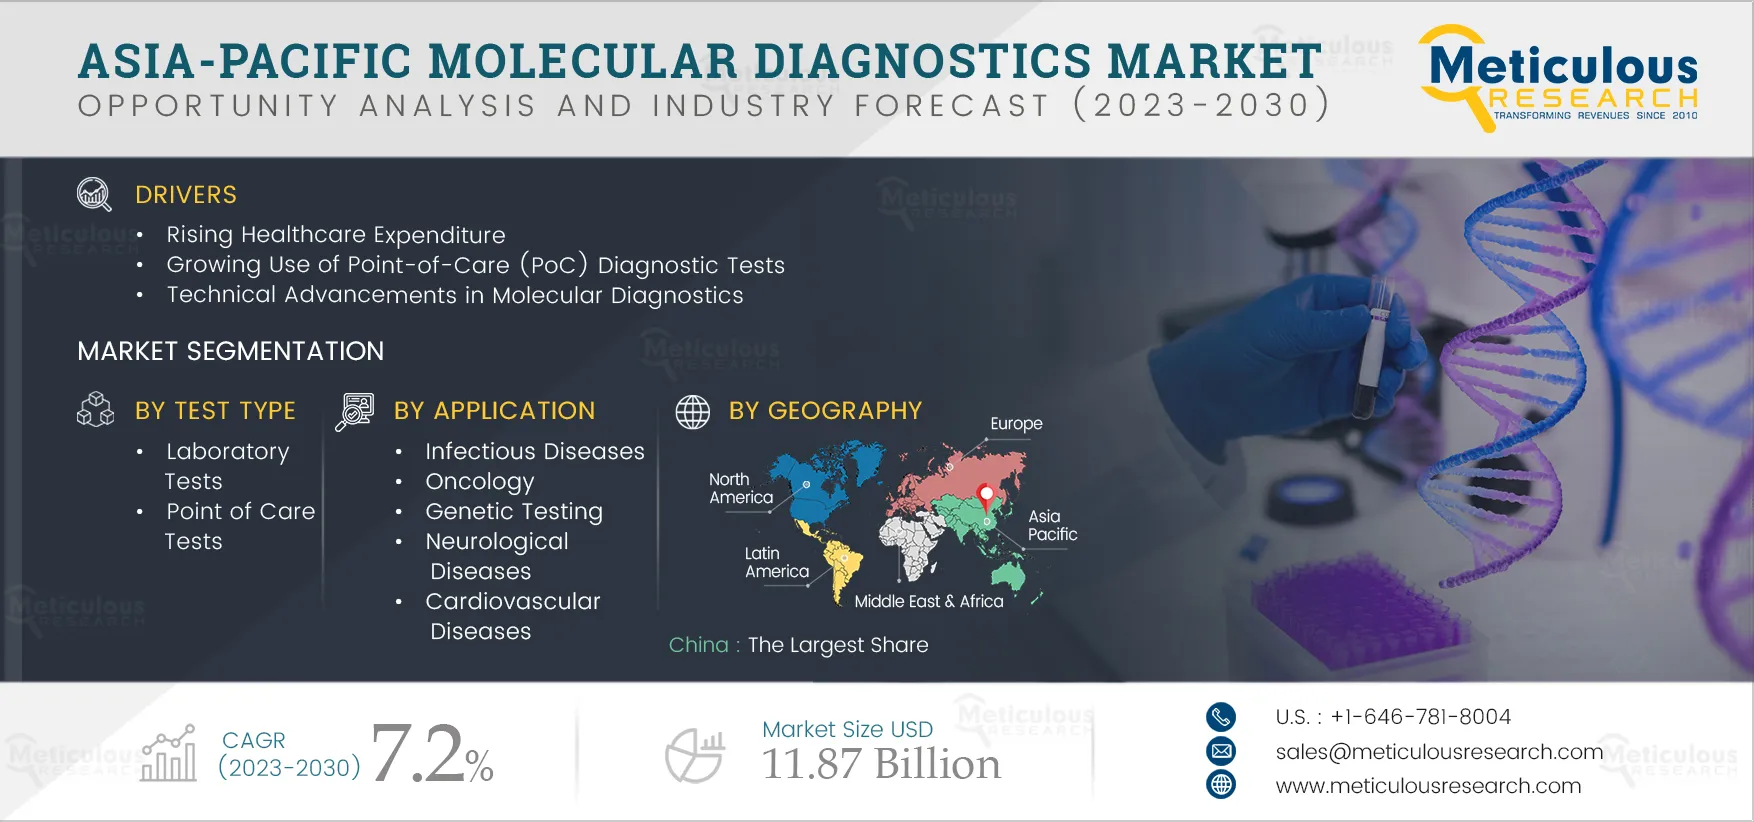 Asia-Pacific Molecular Diagnostics Market 